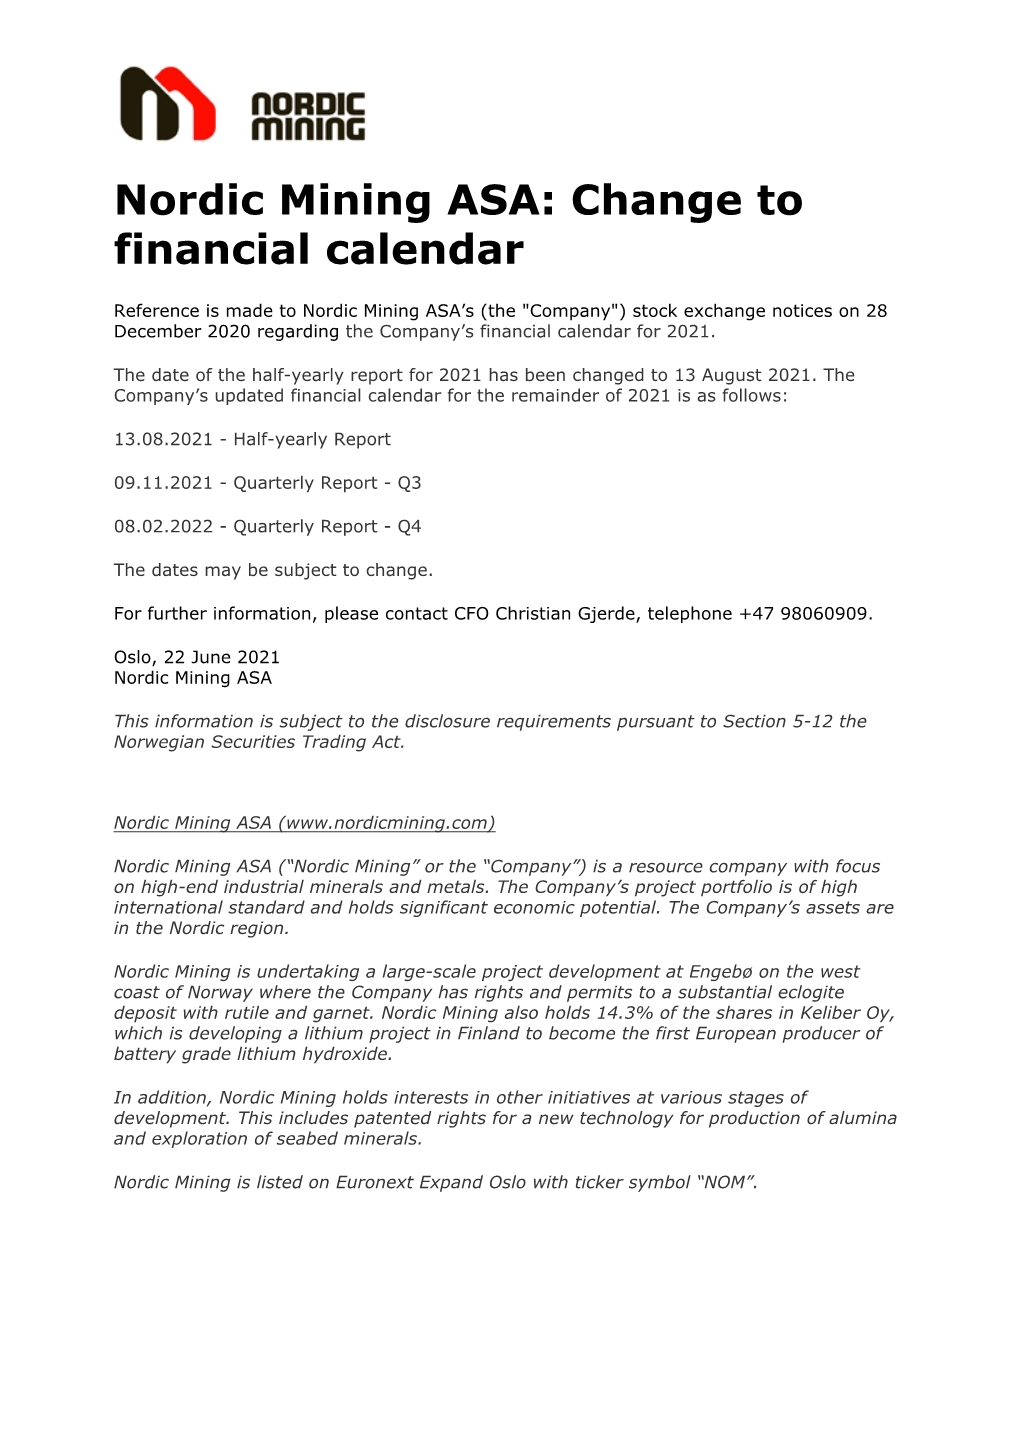 Nordic Mining ASA: Change to Financial Calendar